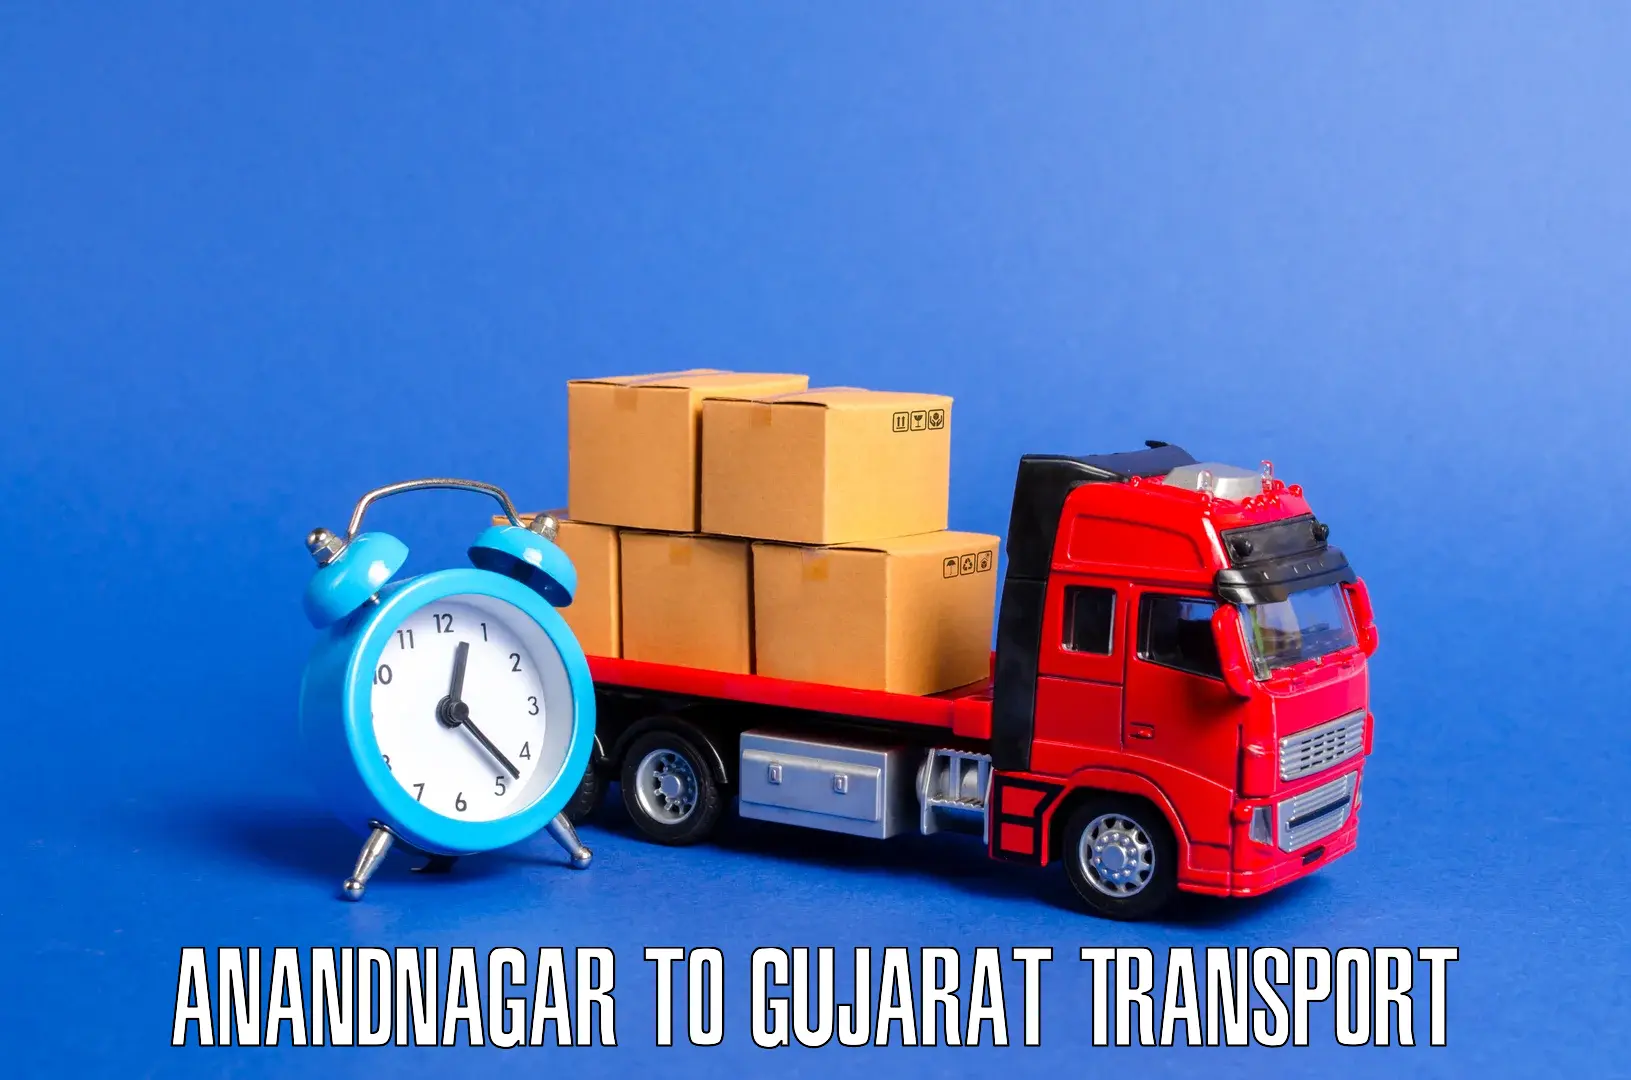 Online transport service Anandnagar to Fateganj